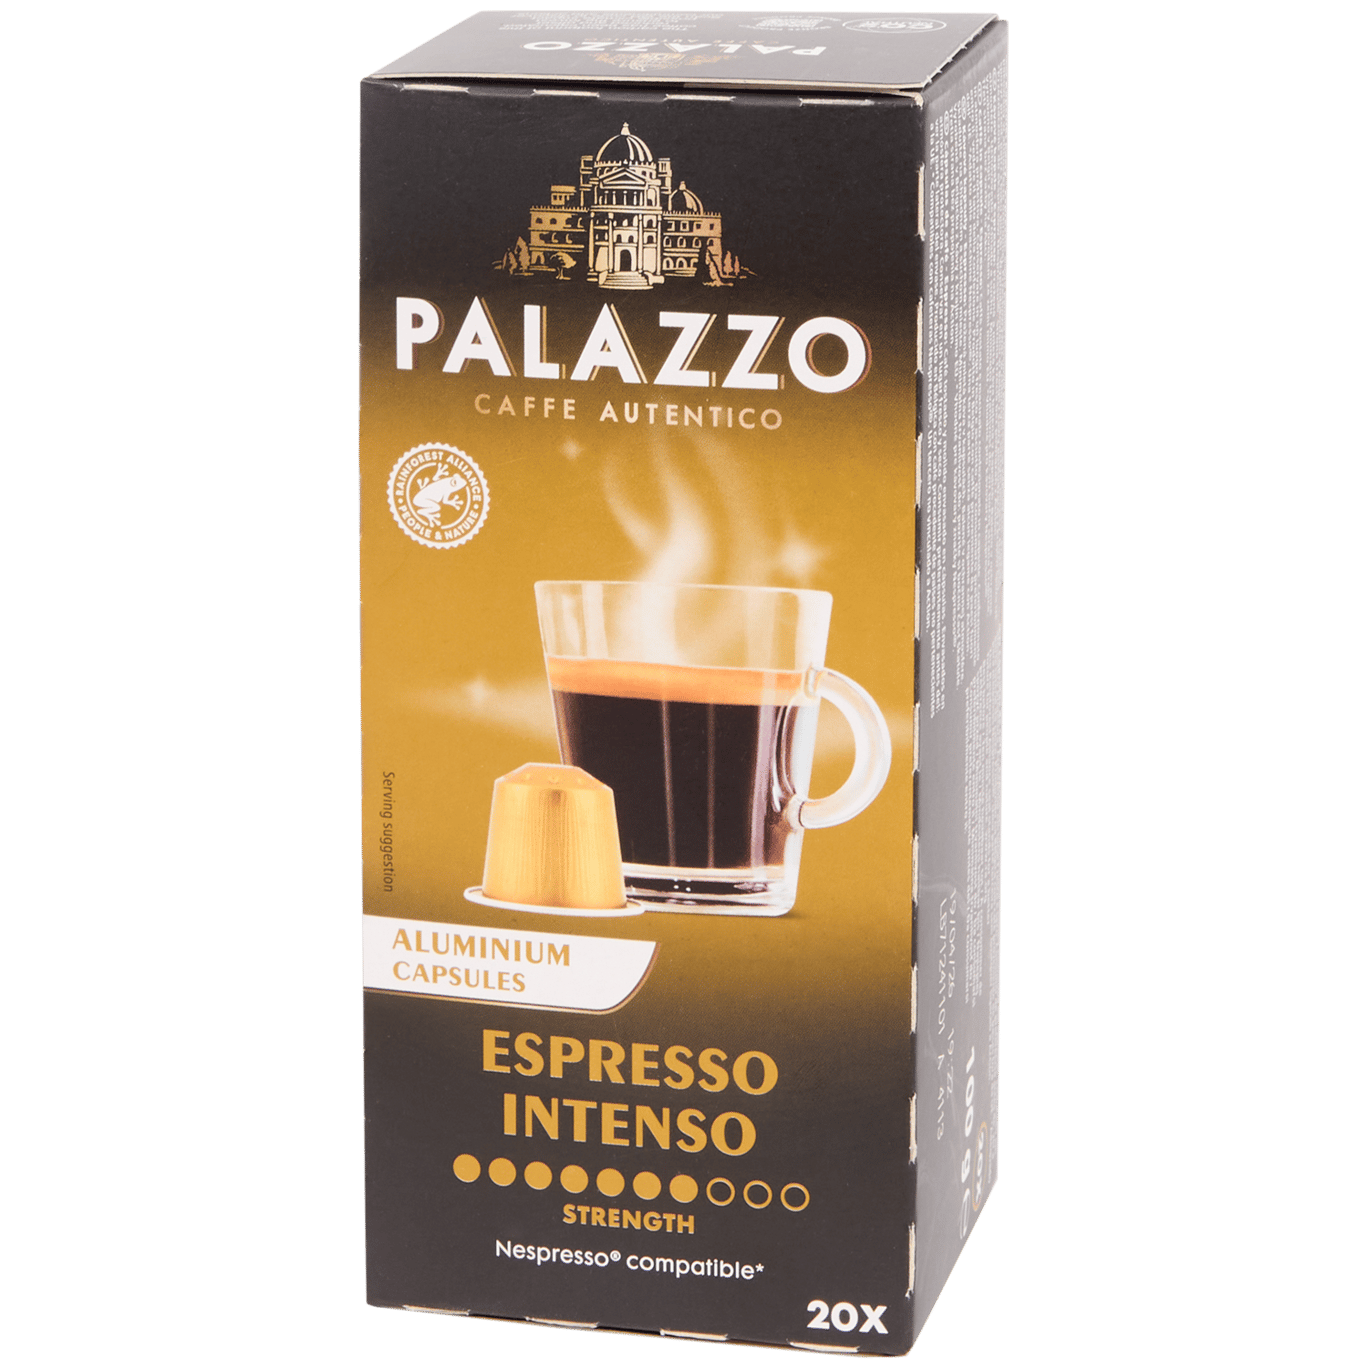 Capsule di caffè Palazzo Espresso intenso